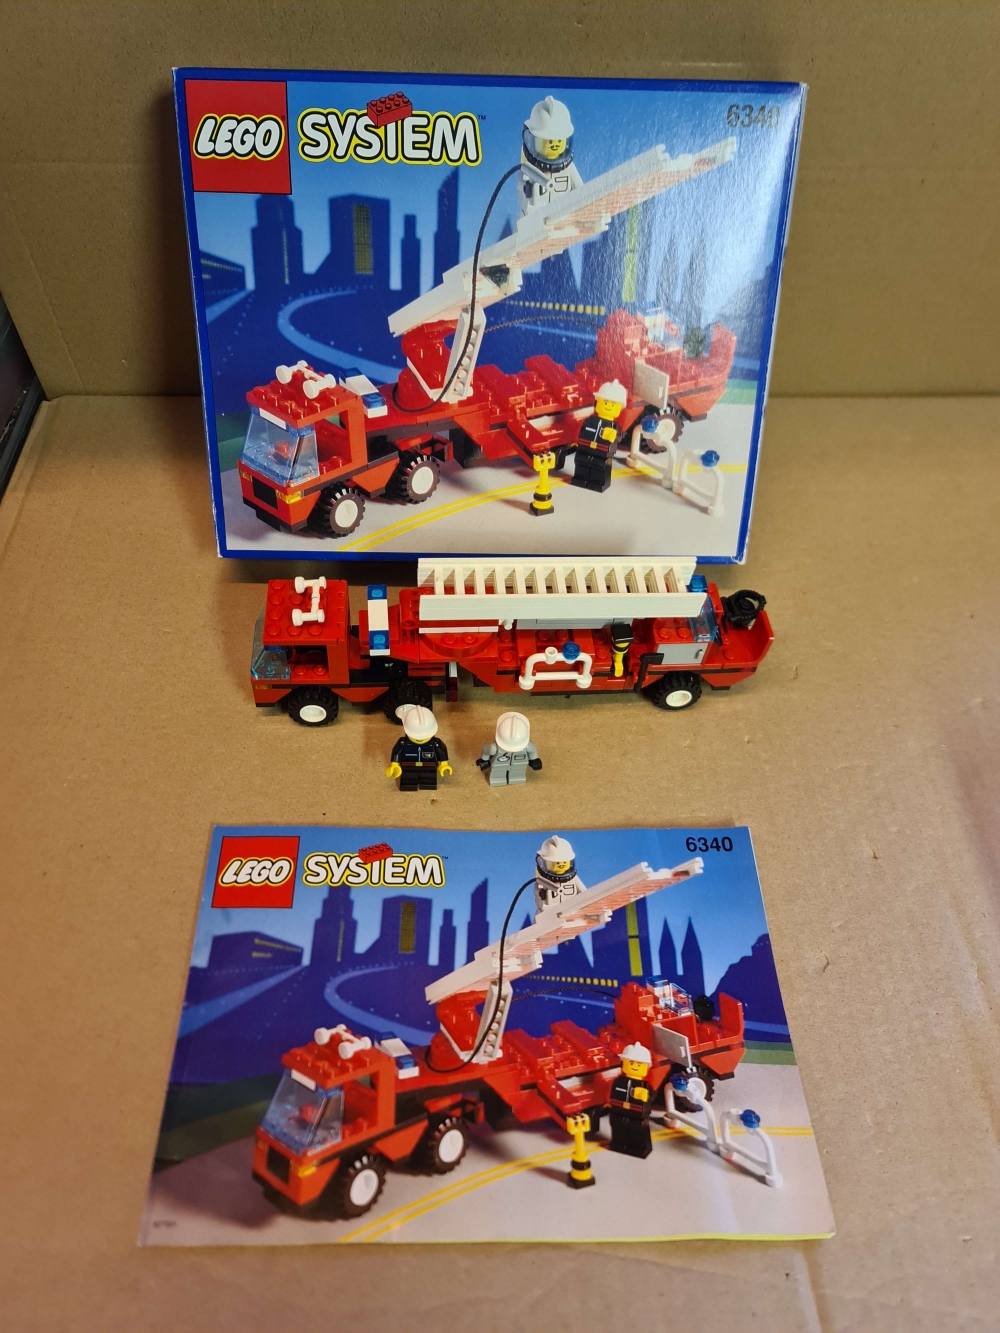 Sett 6340 fra Lego Classic Town serien. 

Nydelig sett. Komplett med eske (ikke innereske men usikker på om det skulle være det) og manual. 
